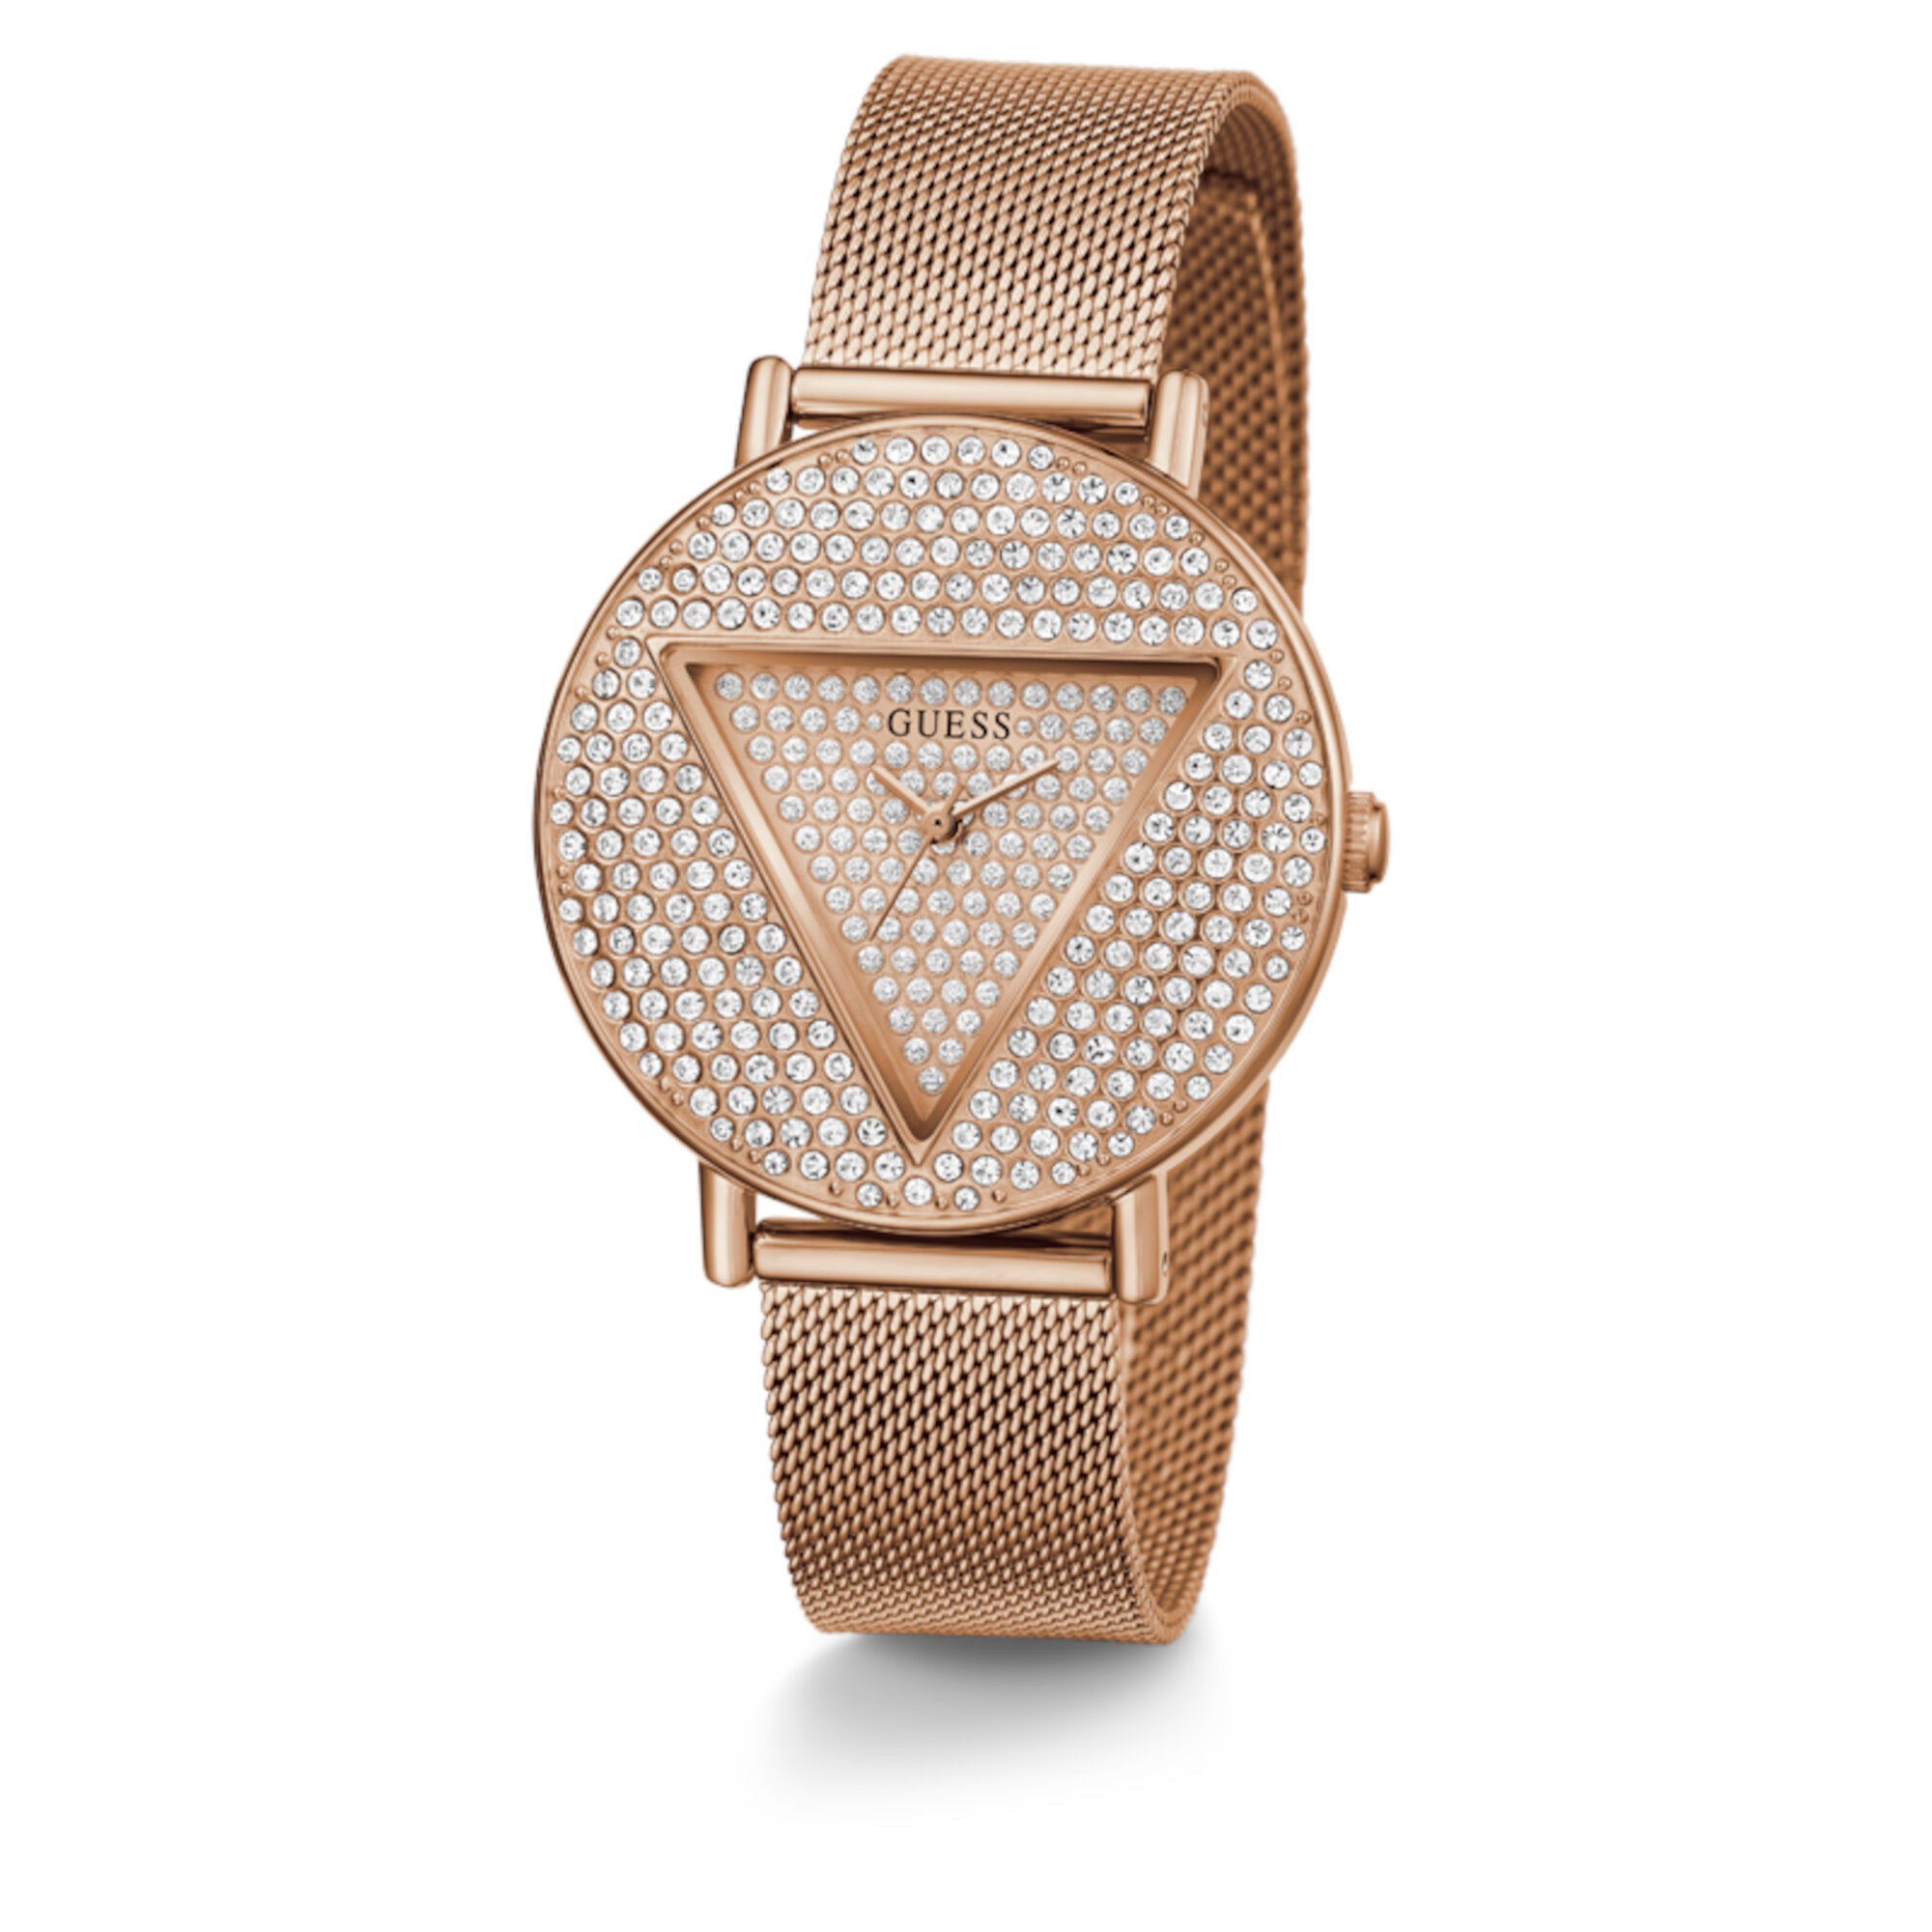 Reloj de Dama + aretes Guess oro rosa con aplicaciones de cristal